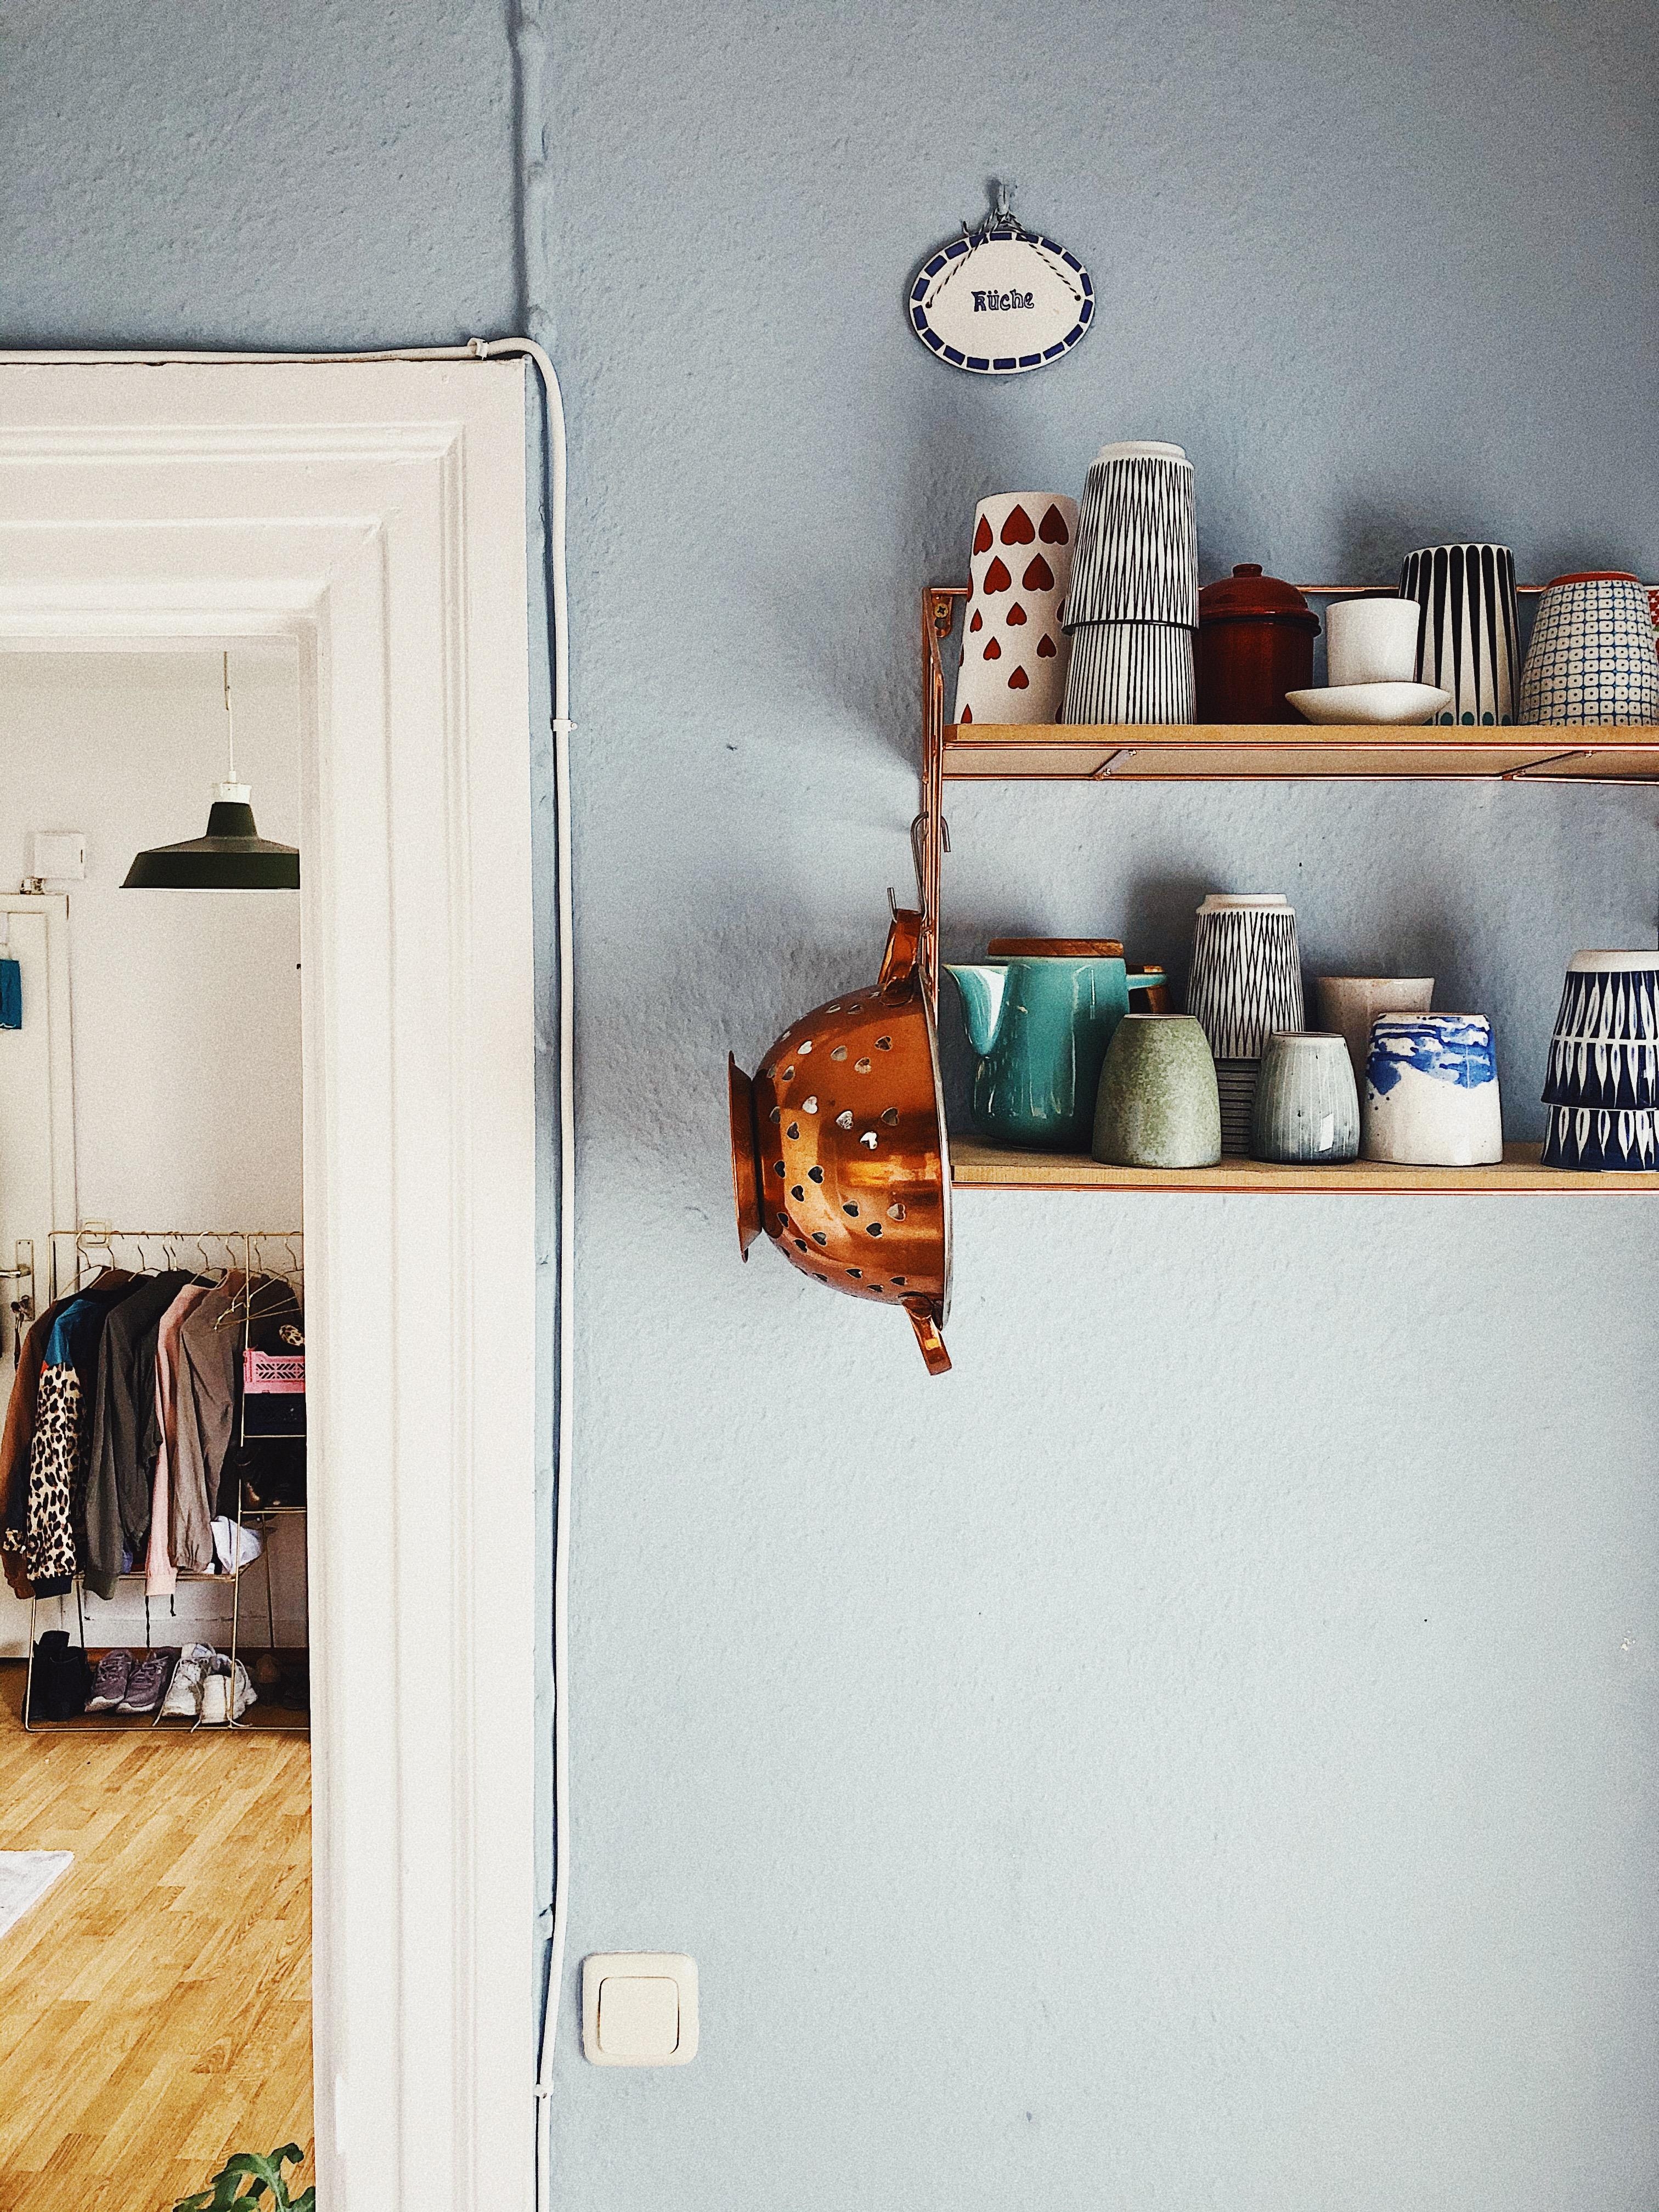 KITCHENLOVE
#kitchendetails #shelfie #ceramics #skandinavischwohnen #schoenerwohnen